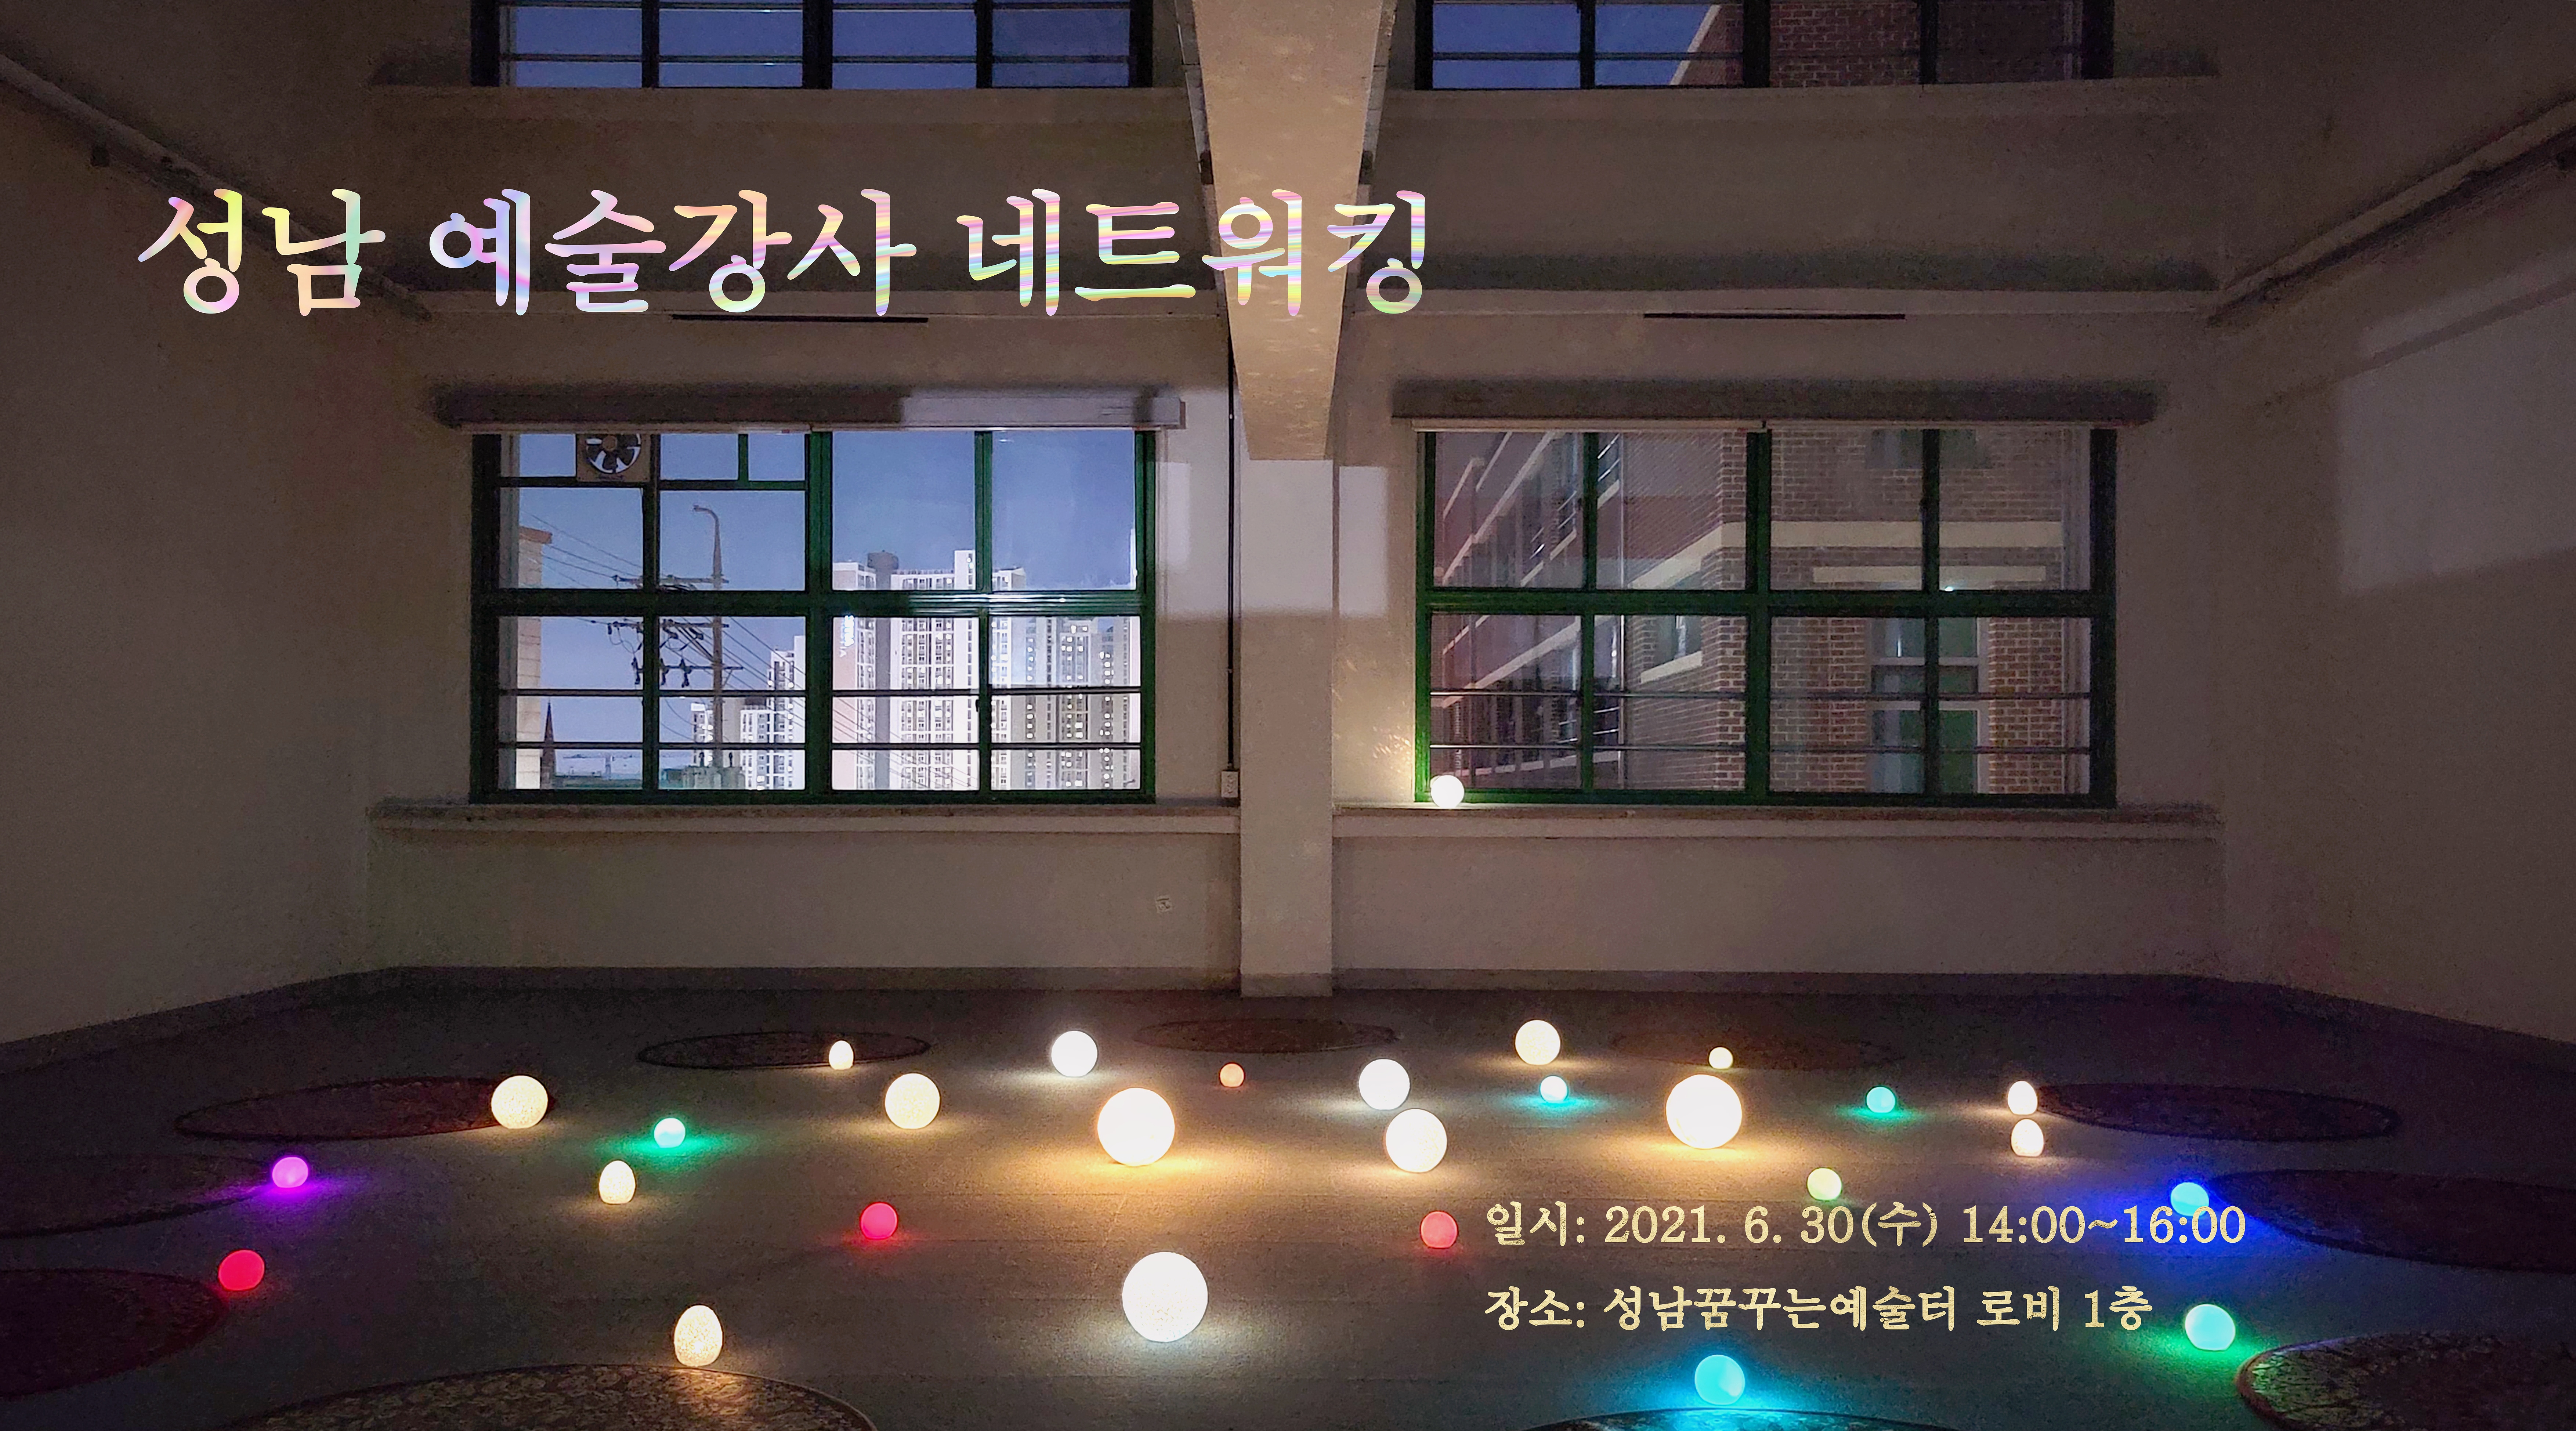 성남 예술강사 네트워킹
일시: 2021.6.30(수) 14:00 ~ 16:00
장소: 성남꿈꾸는예술토 로비1층